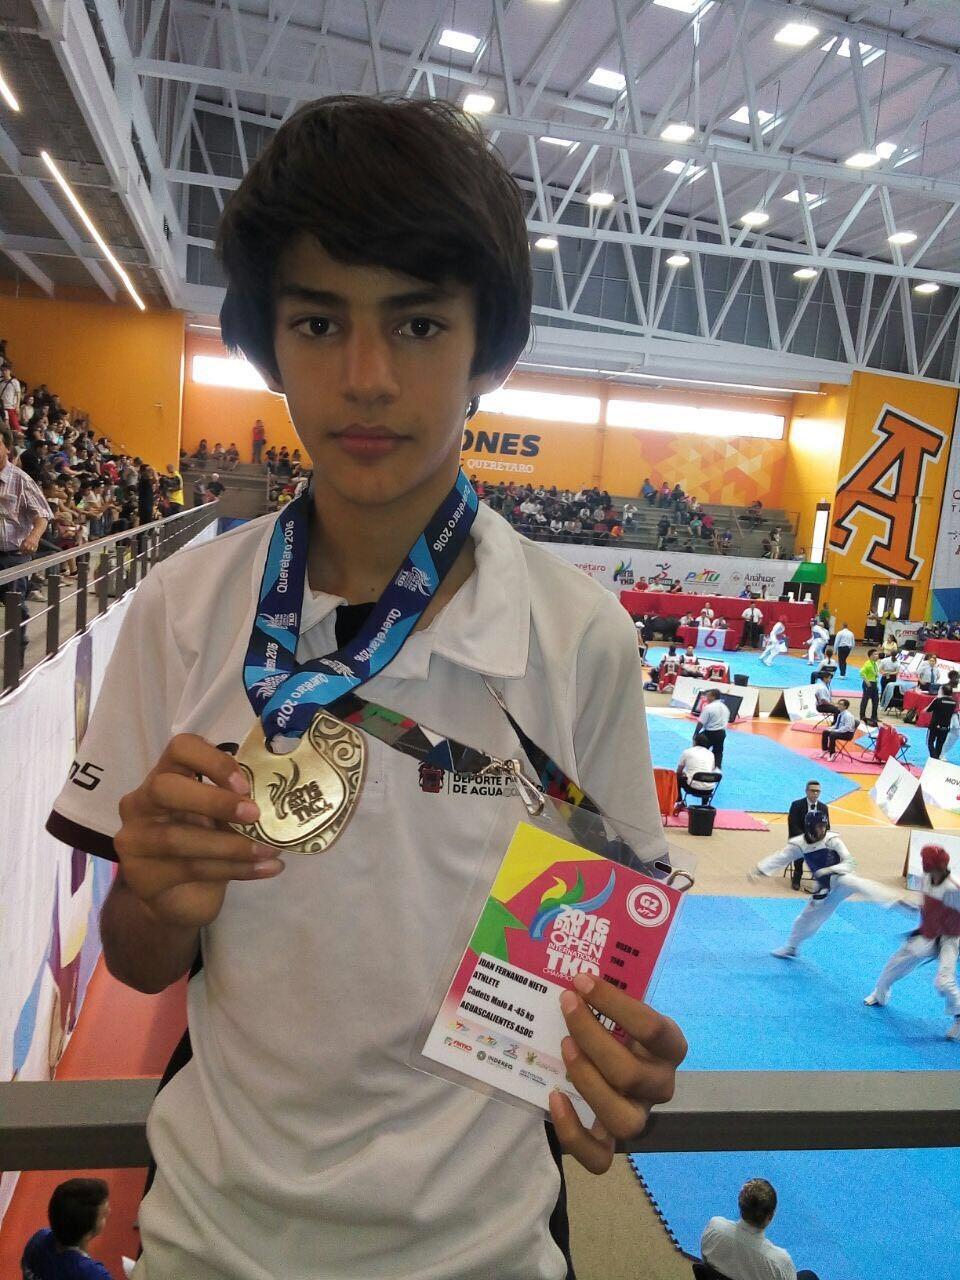 Después de 4 combates ganados Juan Fernando obtuvo la medalla de oro en su categoría cadete (menos de 45 kg).